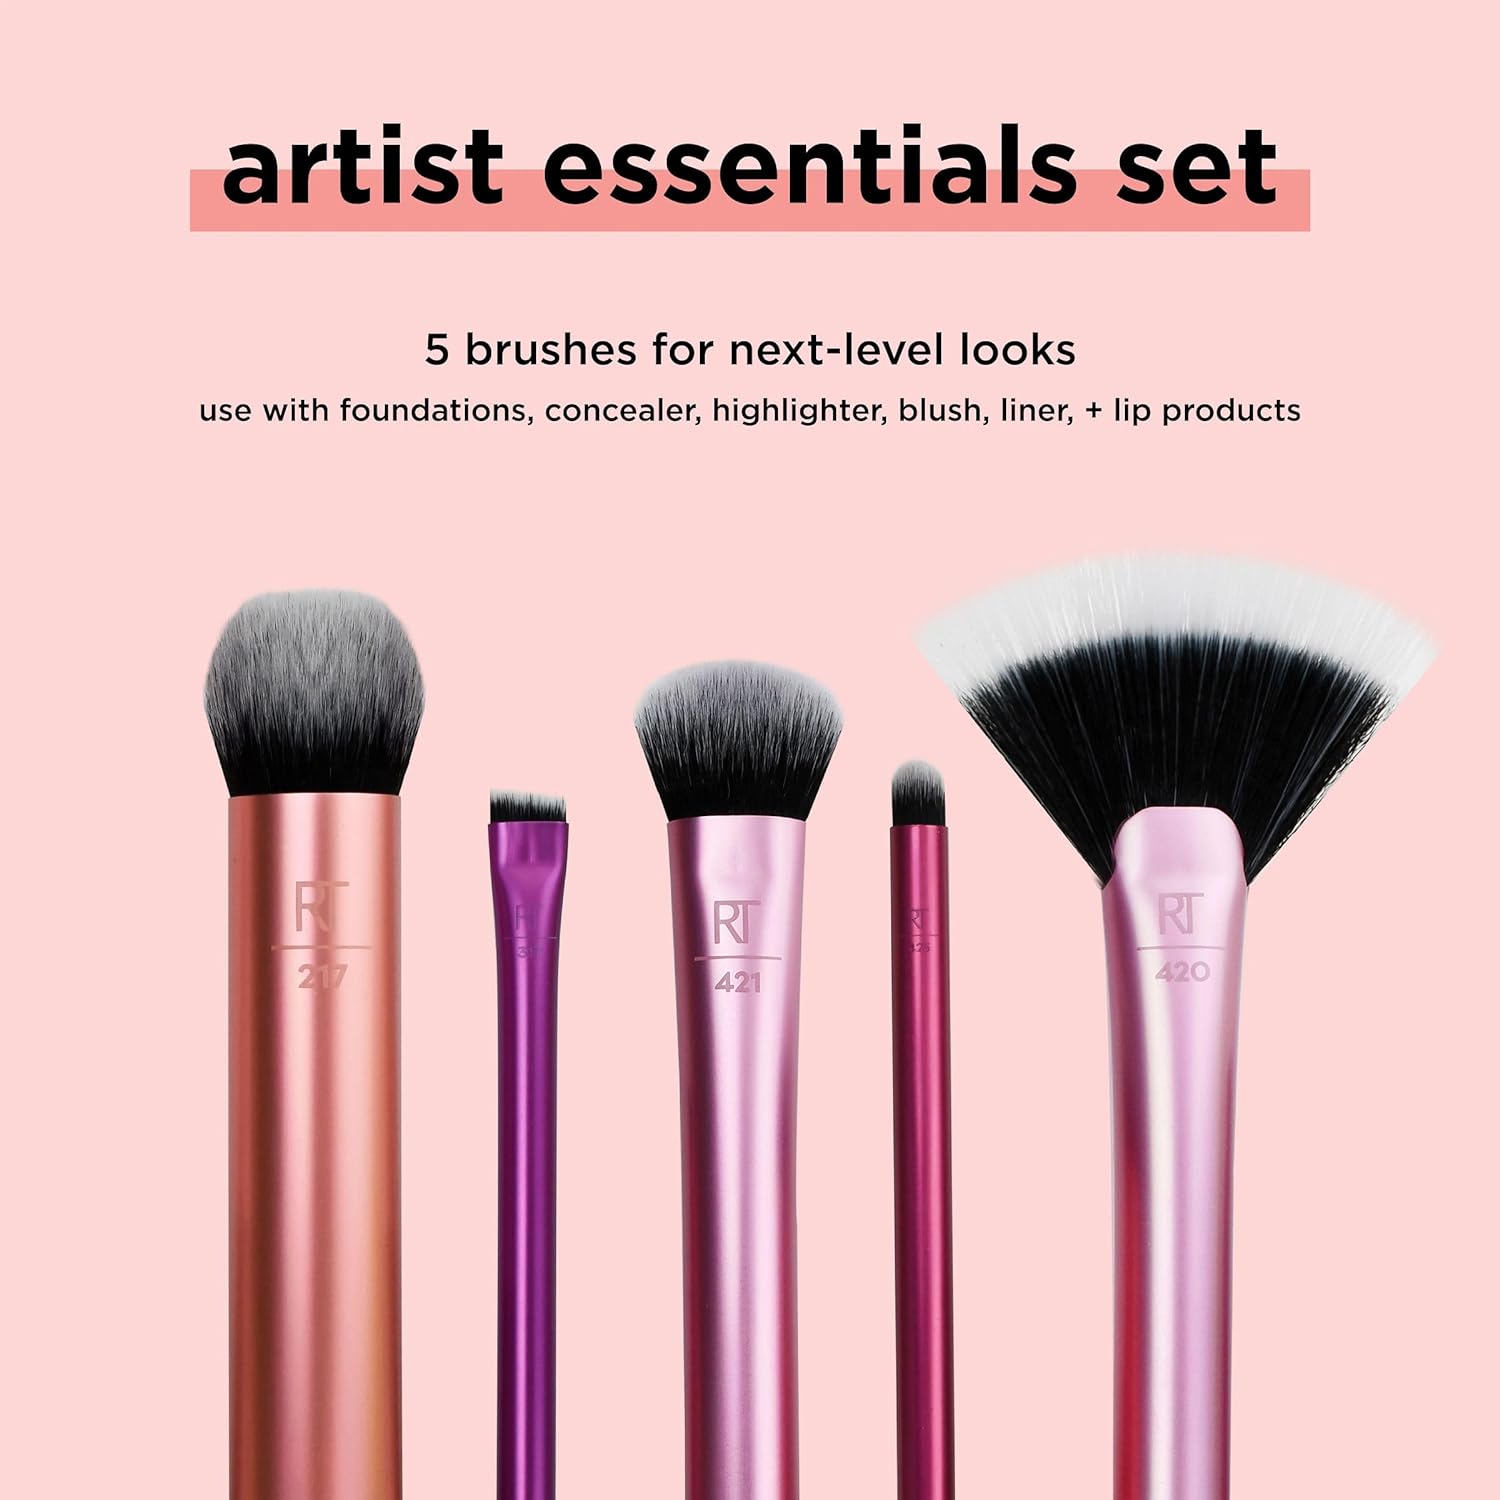 Real Techniques Face Base Makeup Brush Kit, 5 Piece Set